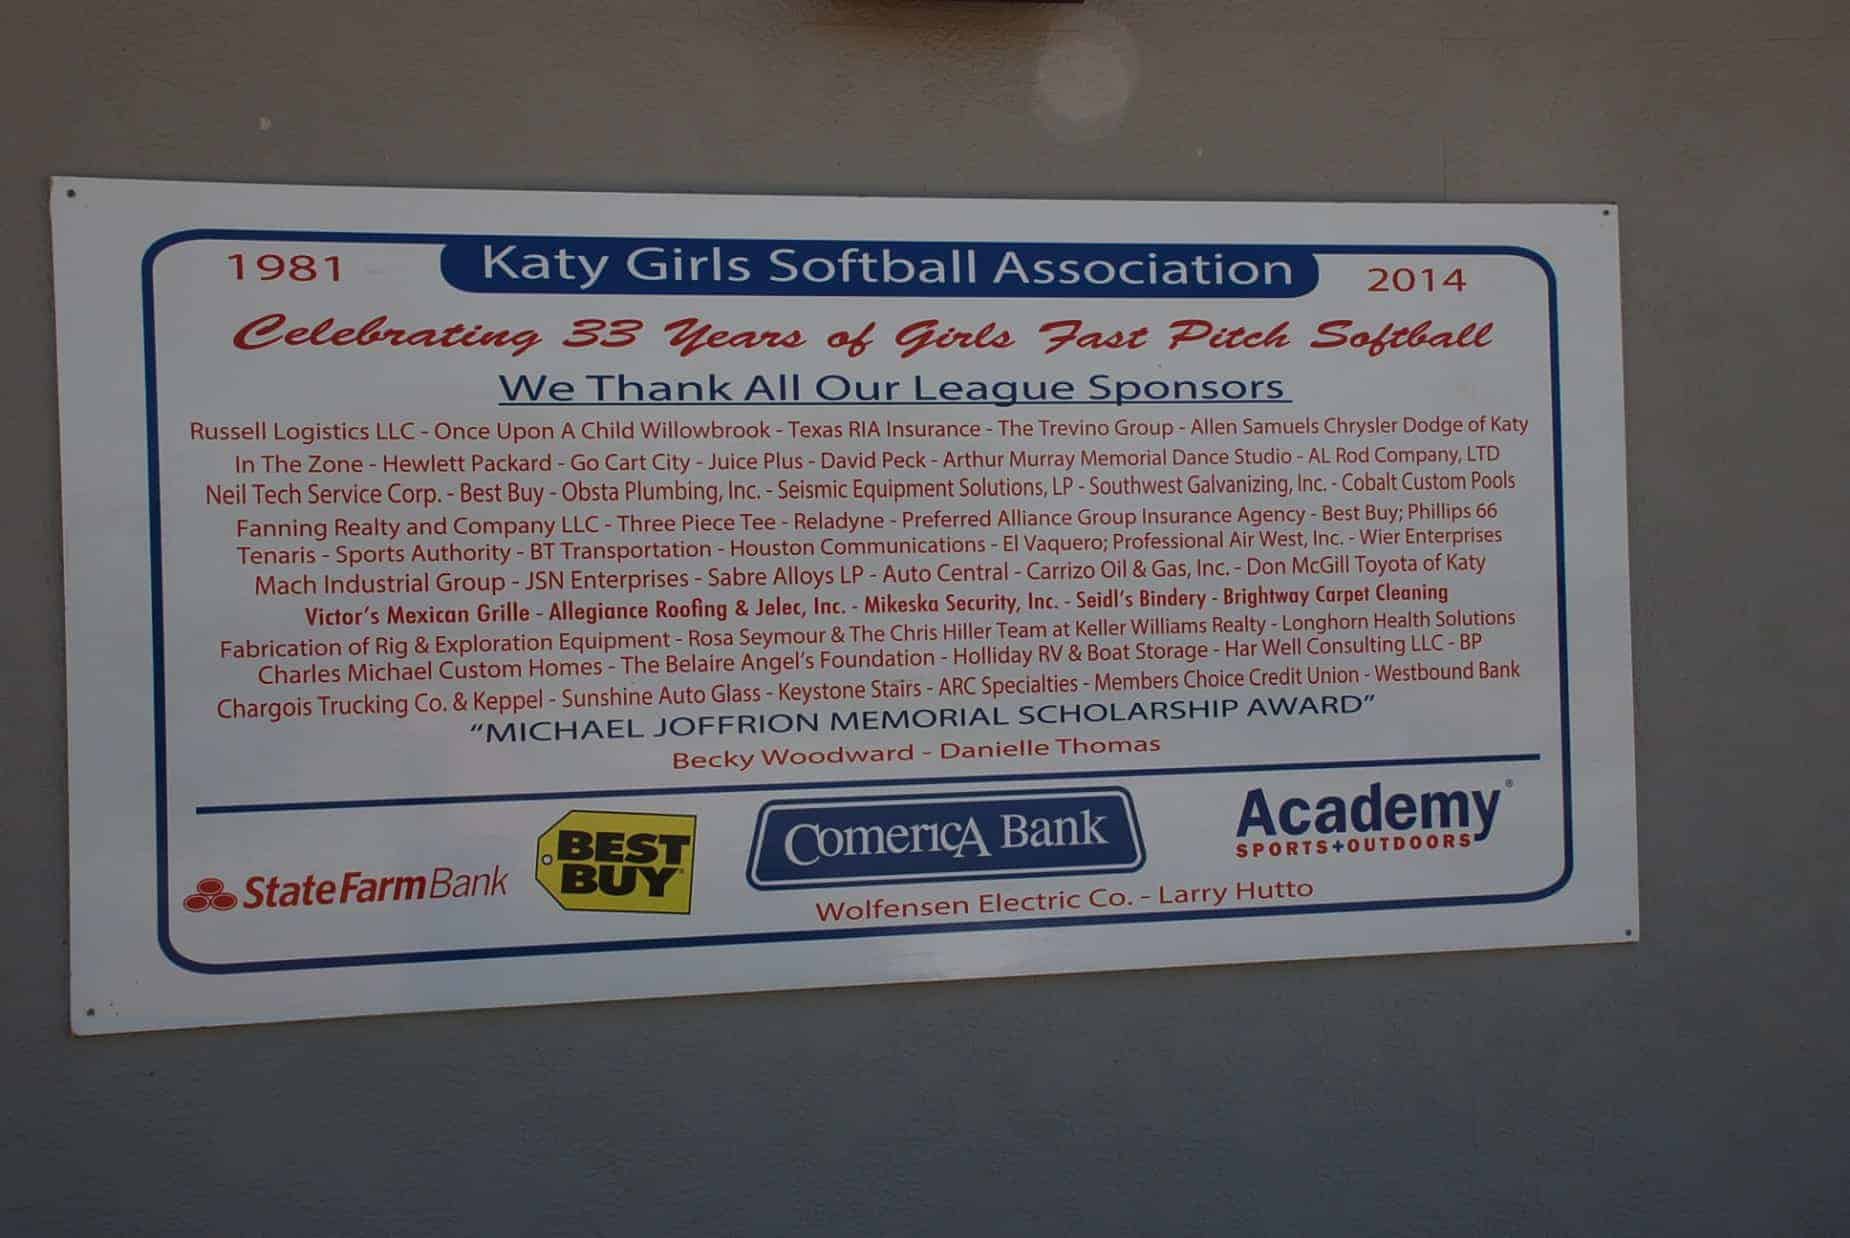 Katy Girl's Softball signage at Paul Rushing Park Katy TX